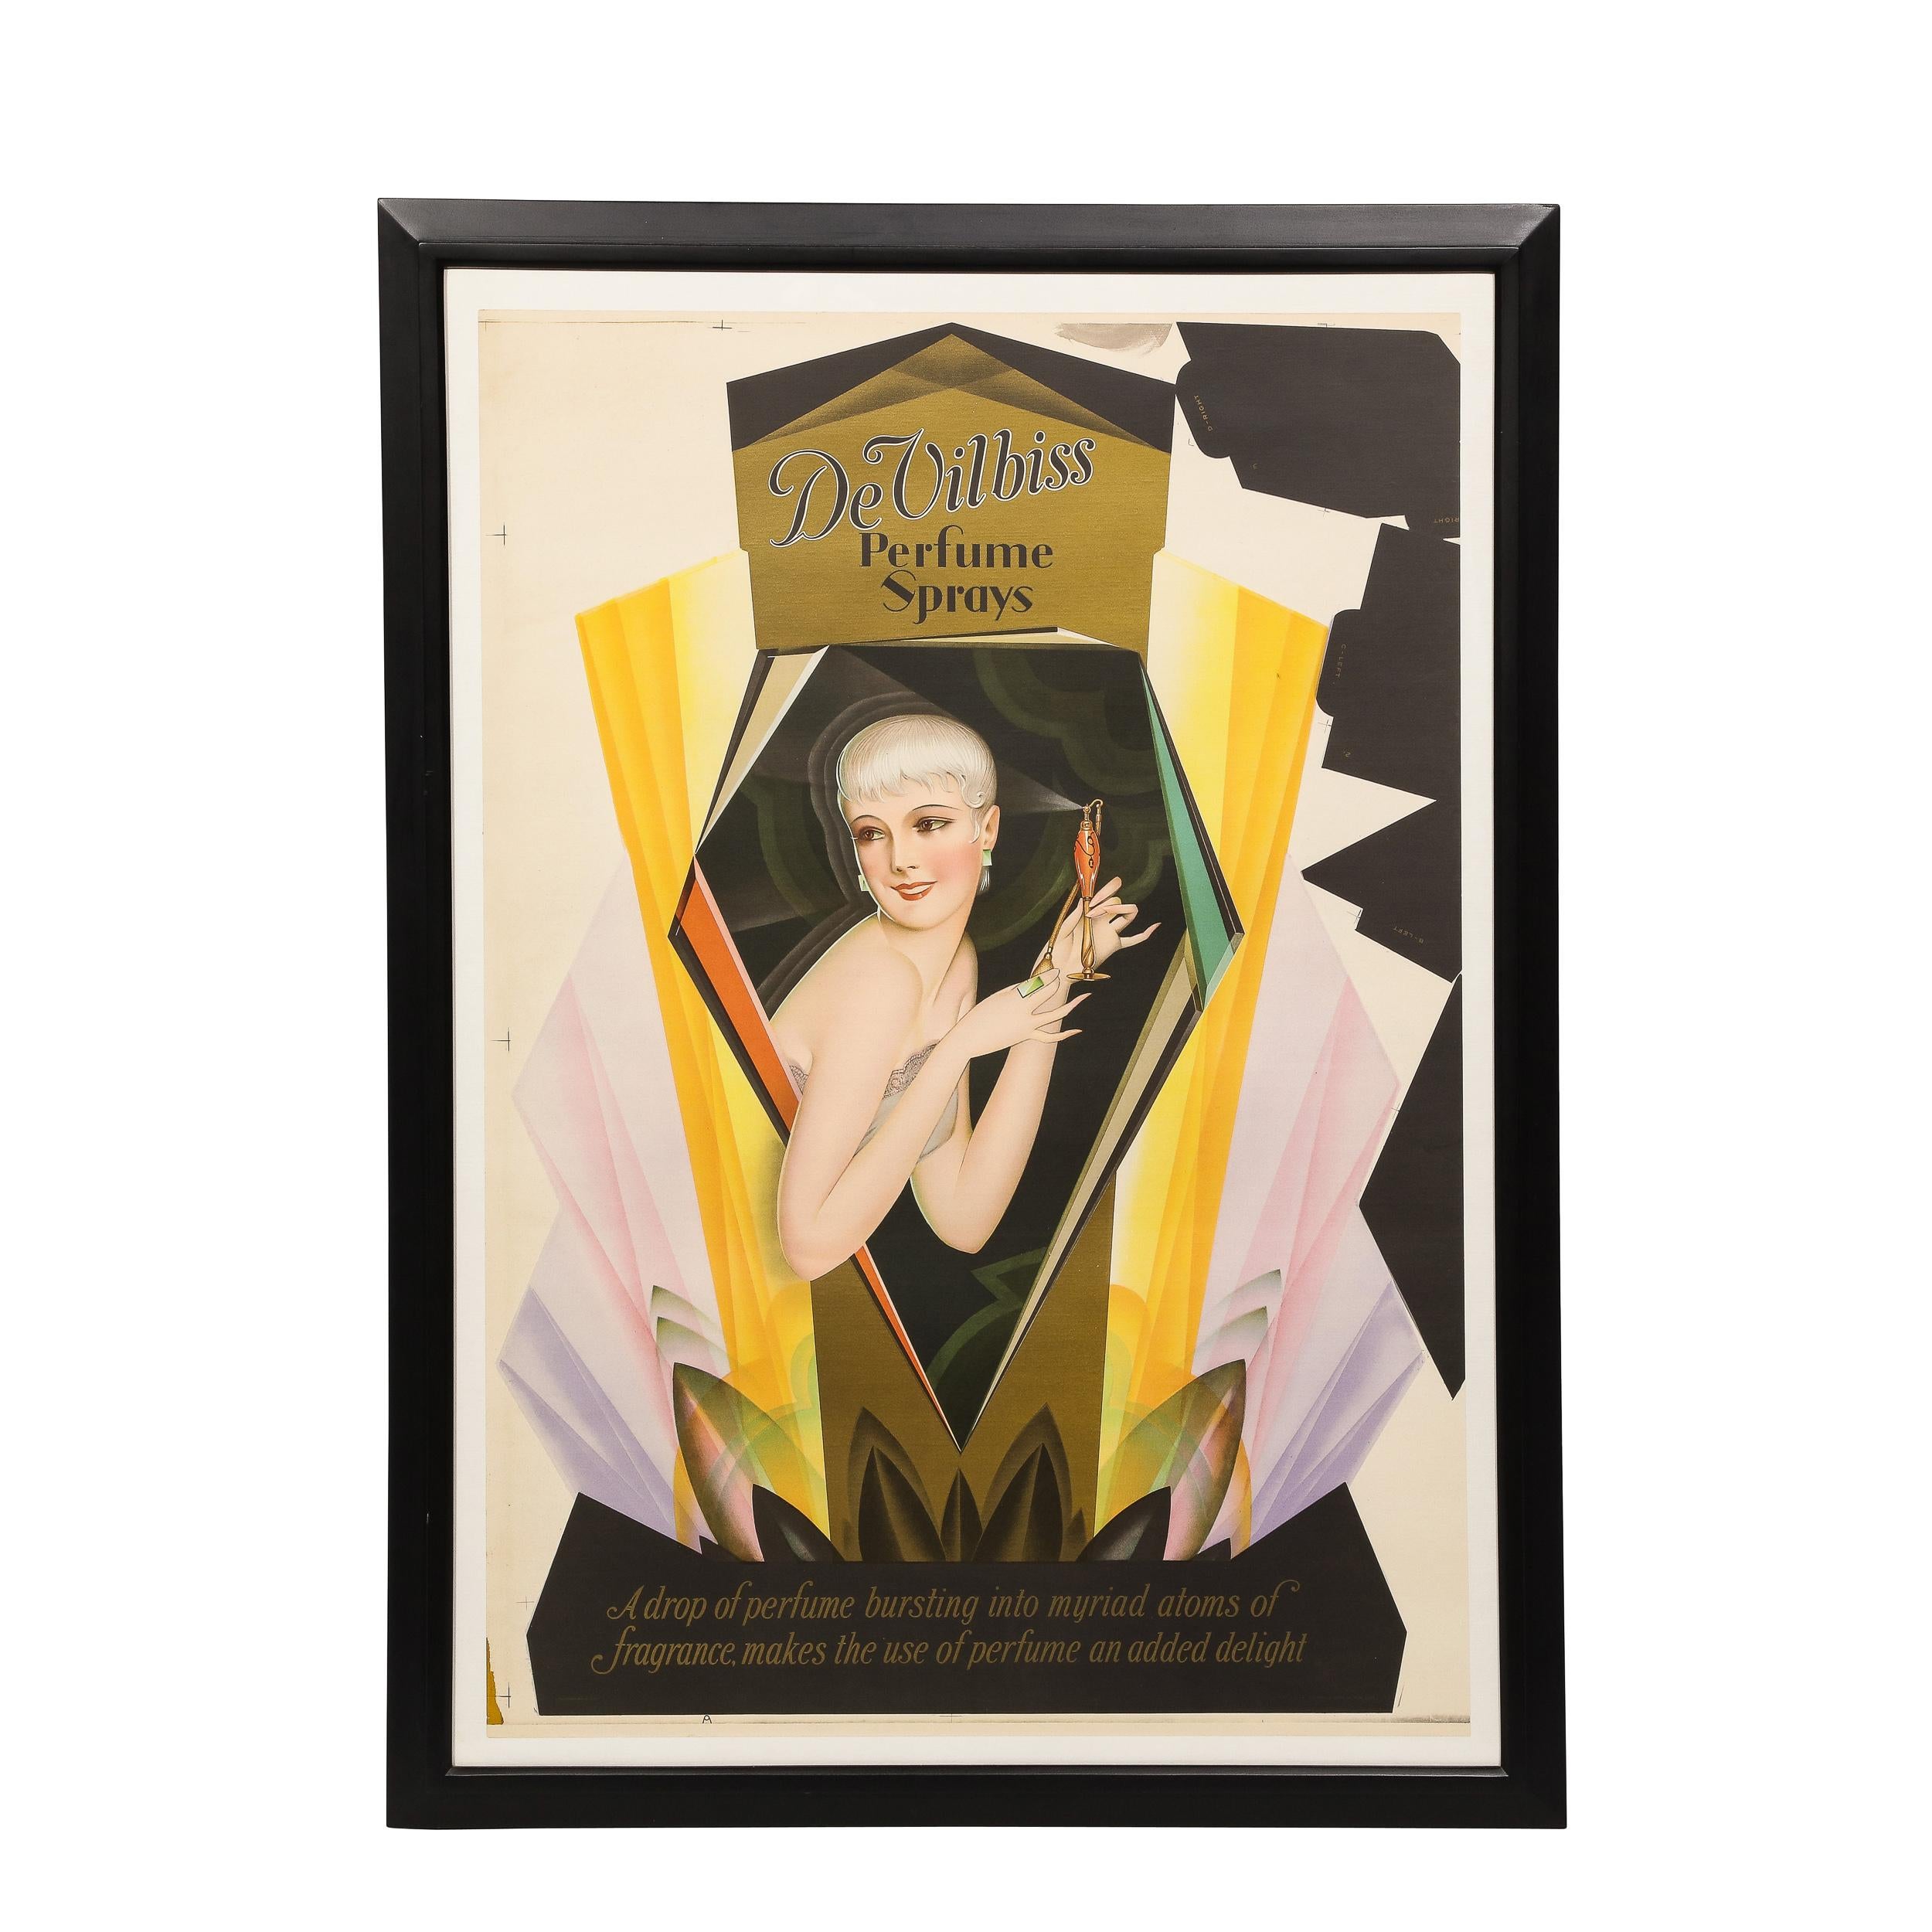 Cette magnifique affiche Art Déco a été réalisée par l'estimé artiste américain George Petty pour l'A.C. Schultz Company en 1926. L'œuvre est une publicité pour le parfum DeVilbiss, qui représente une "Petty Girl" (comme on les appelait) au centre